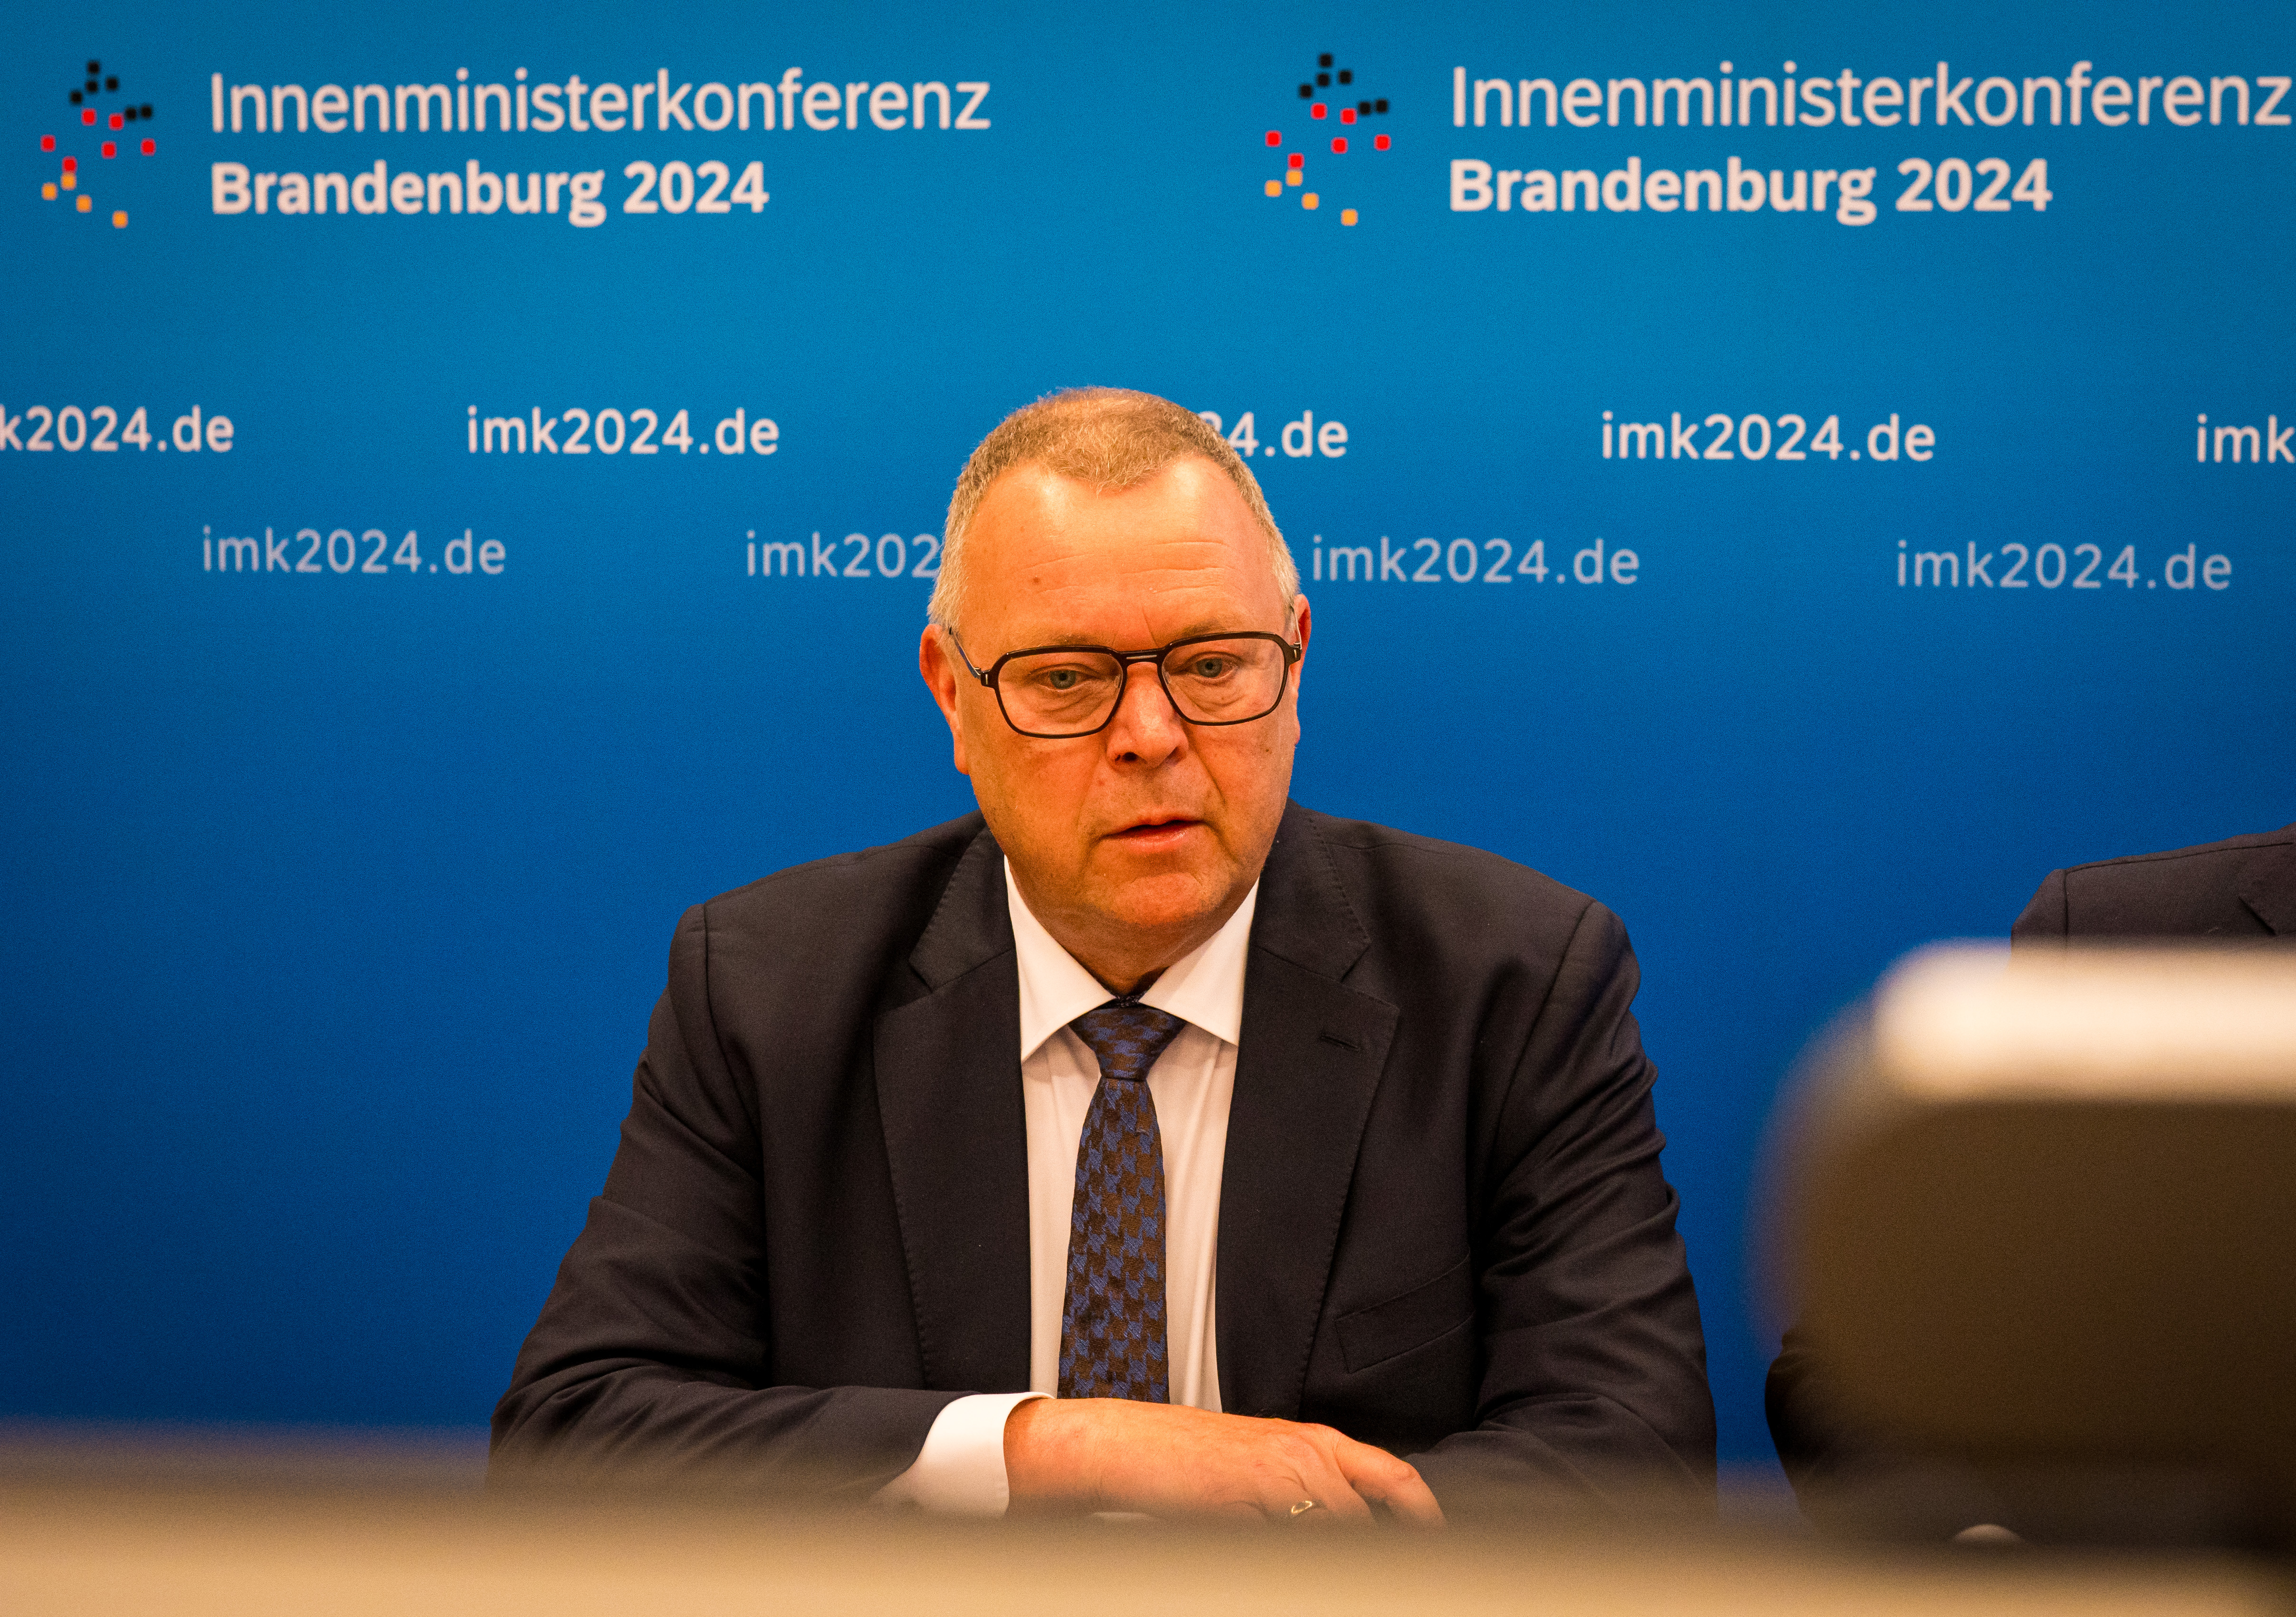 Bild: IMK-Vorsitzender Michael Stübgen bei der Pressekonferenz zur Sondersitzung der IMK